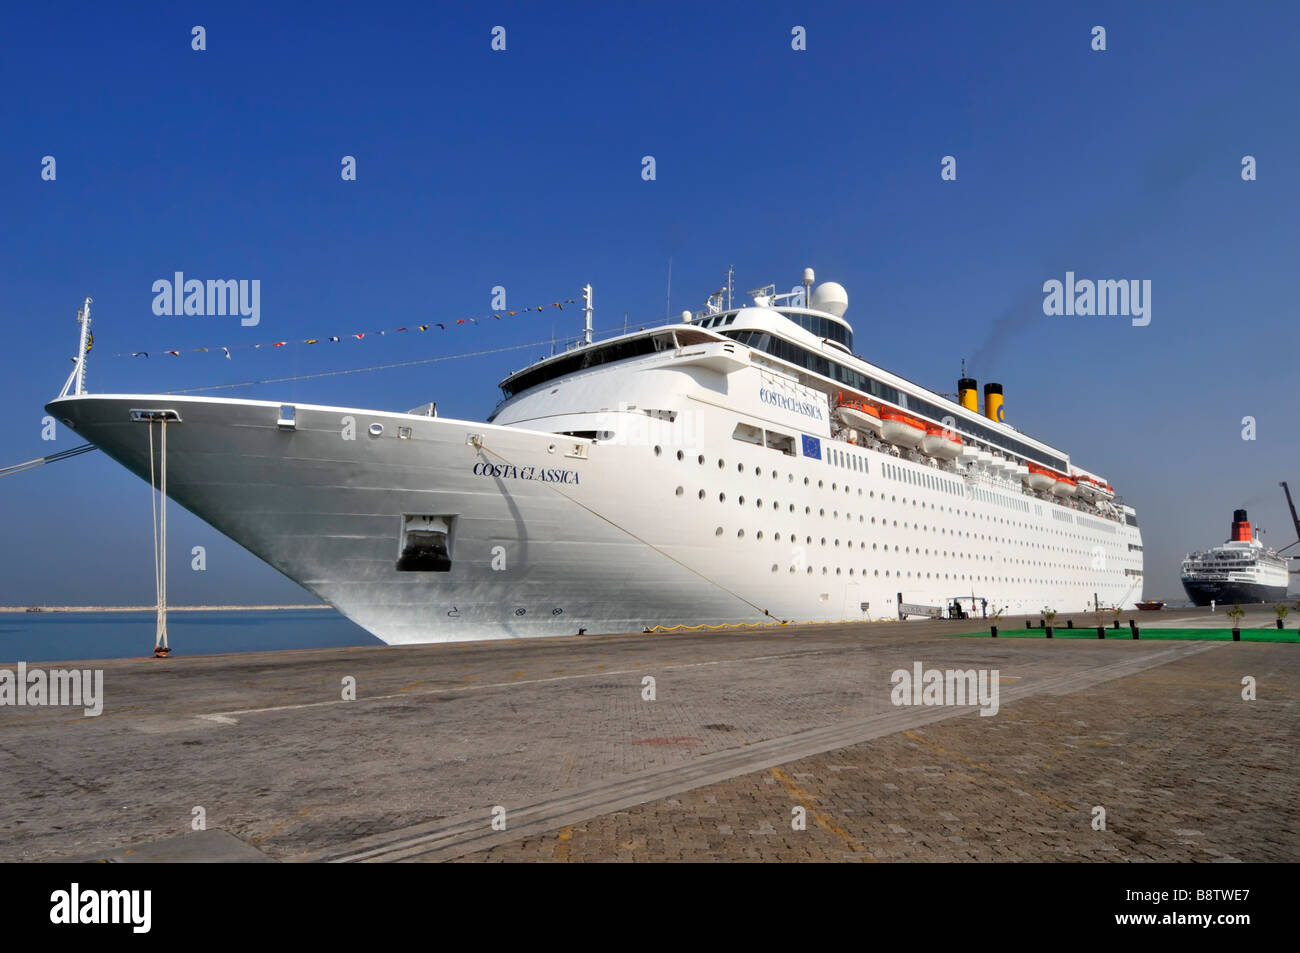 Dubai-Costa Kreuzfahrtschiff in Port Rashid mit Queen Elizabeth 2. Liner jenseits festgemacht Stockfoto